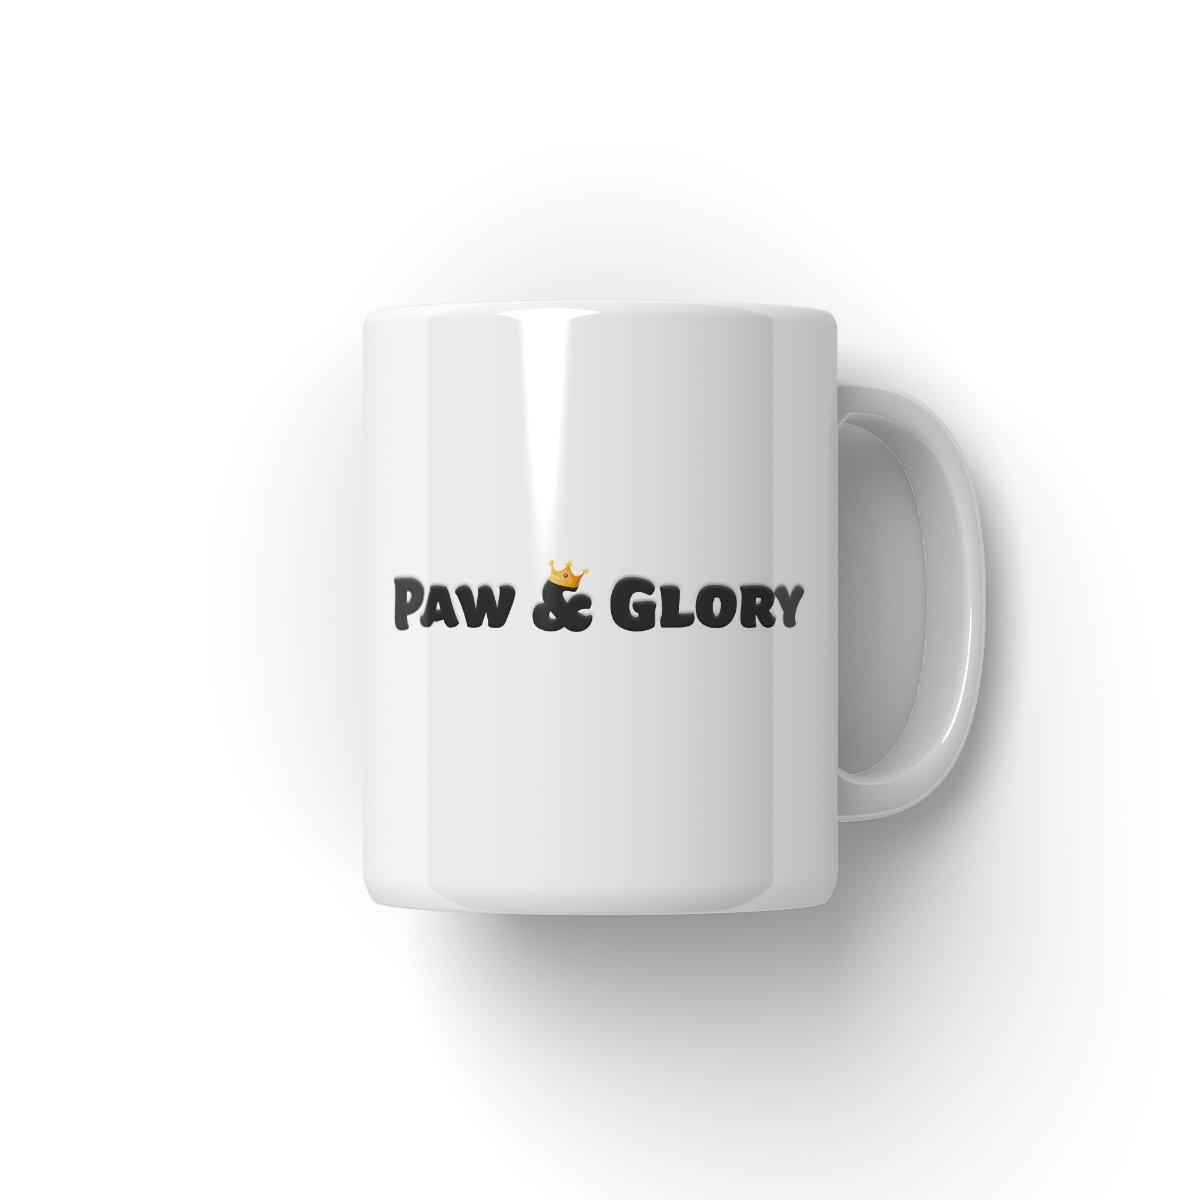 Wales Rugby Team: Paw & Glory, pawandglory, personalized puppy mug, custom dog mug, personalised mugs dog, mugs with dog and owner, custom cat mug, coffee mug with dogs, Pet Portrait Mug